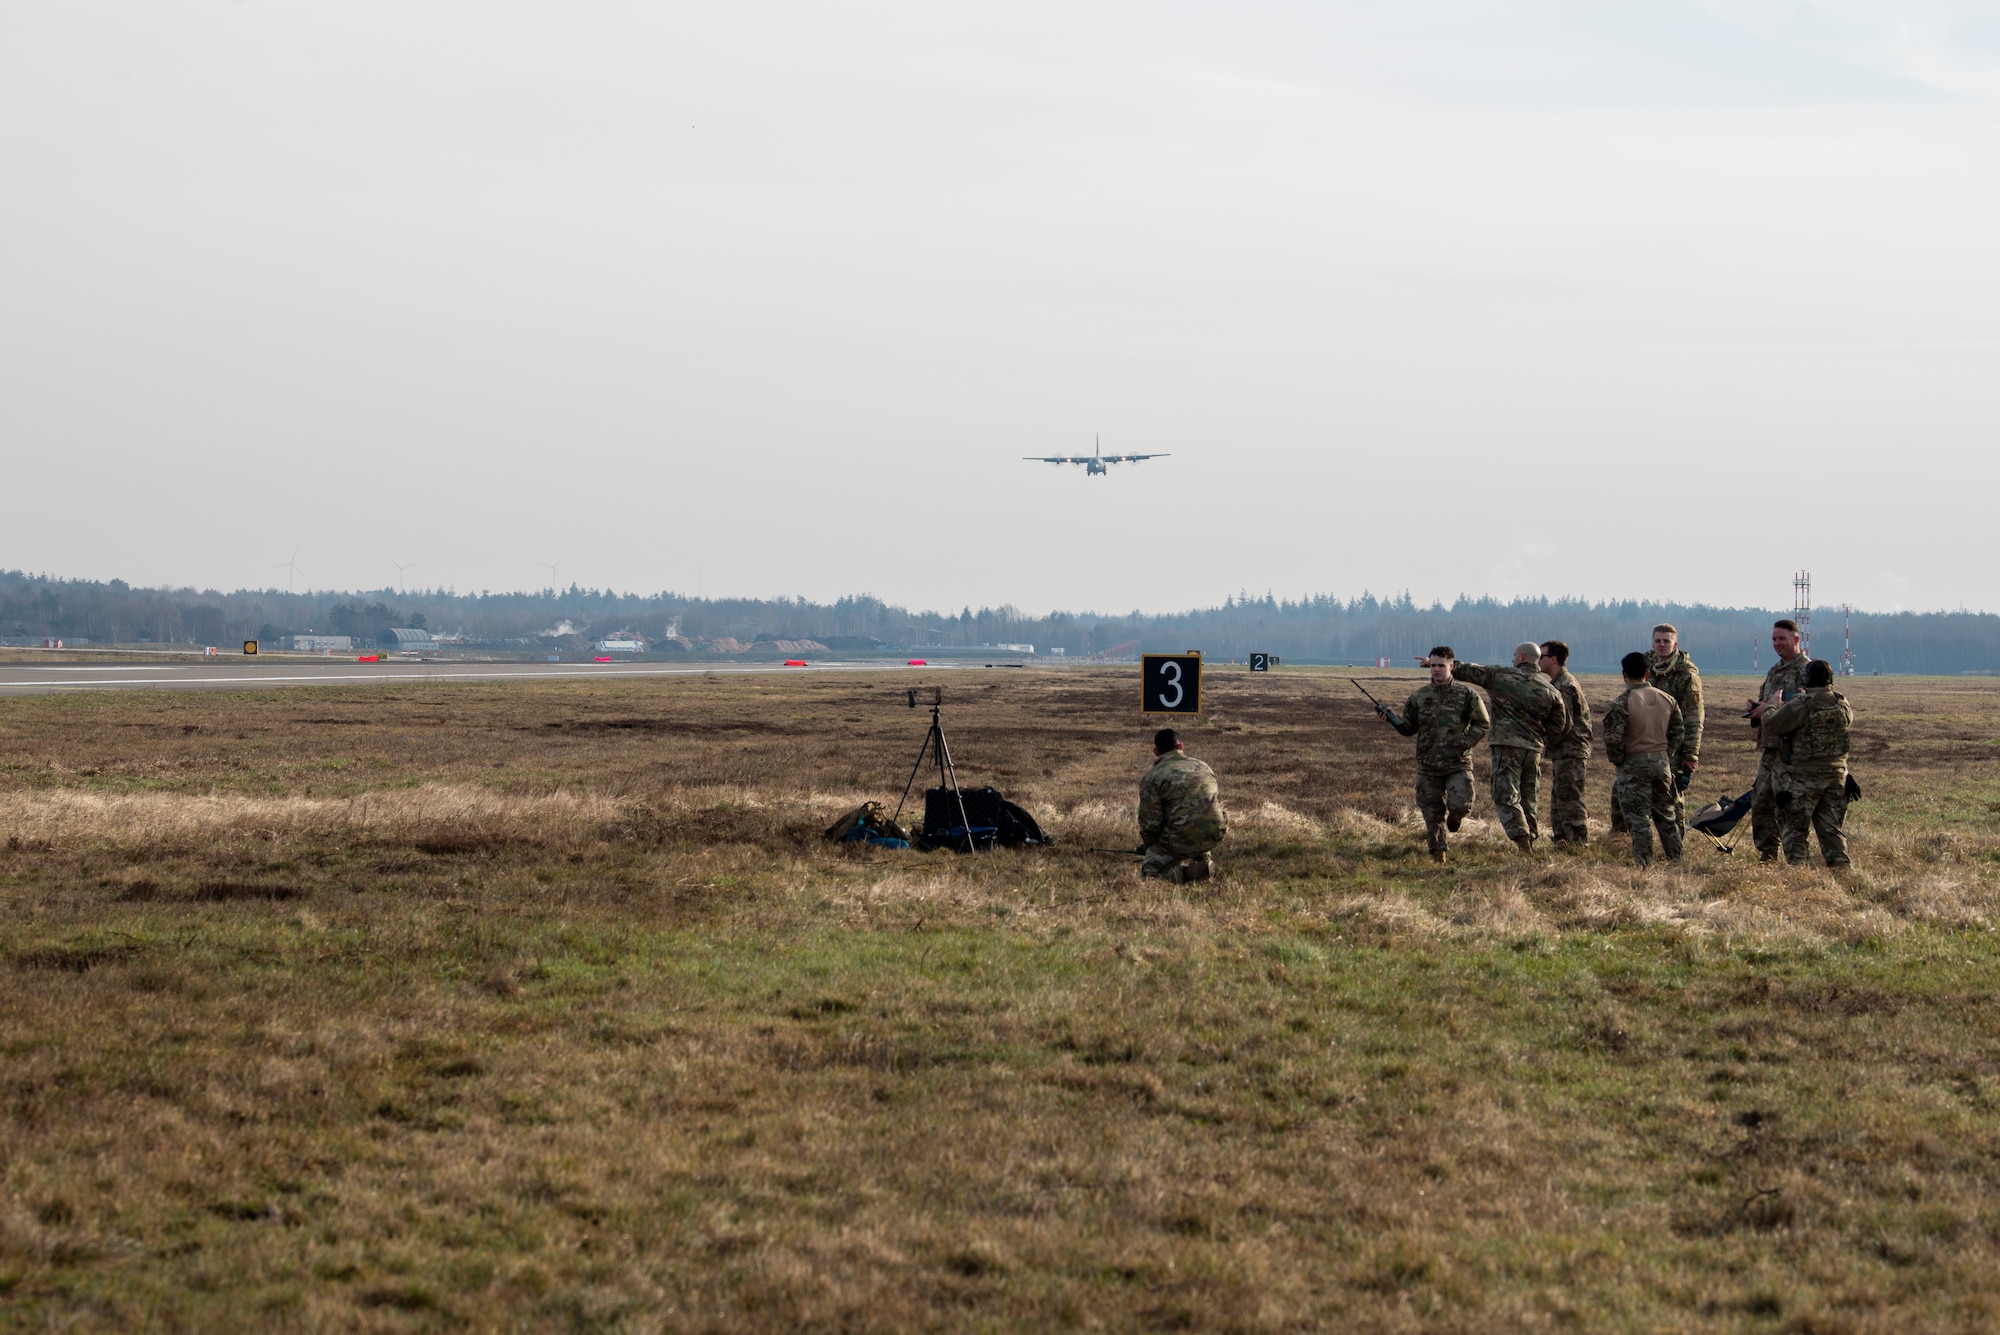 Airmen watch aircraft on flight line